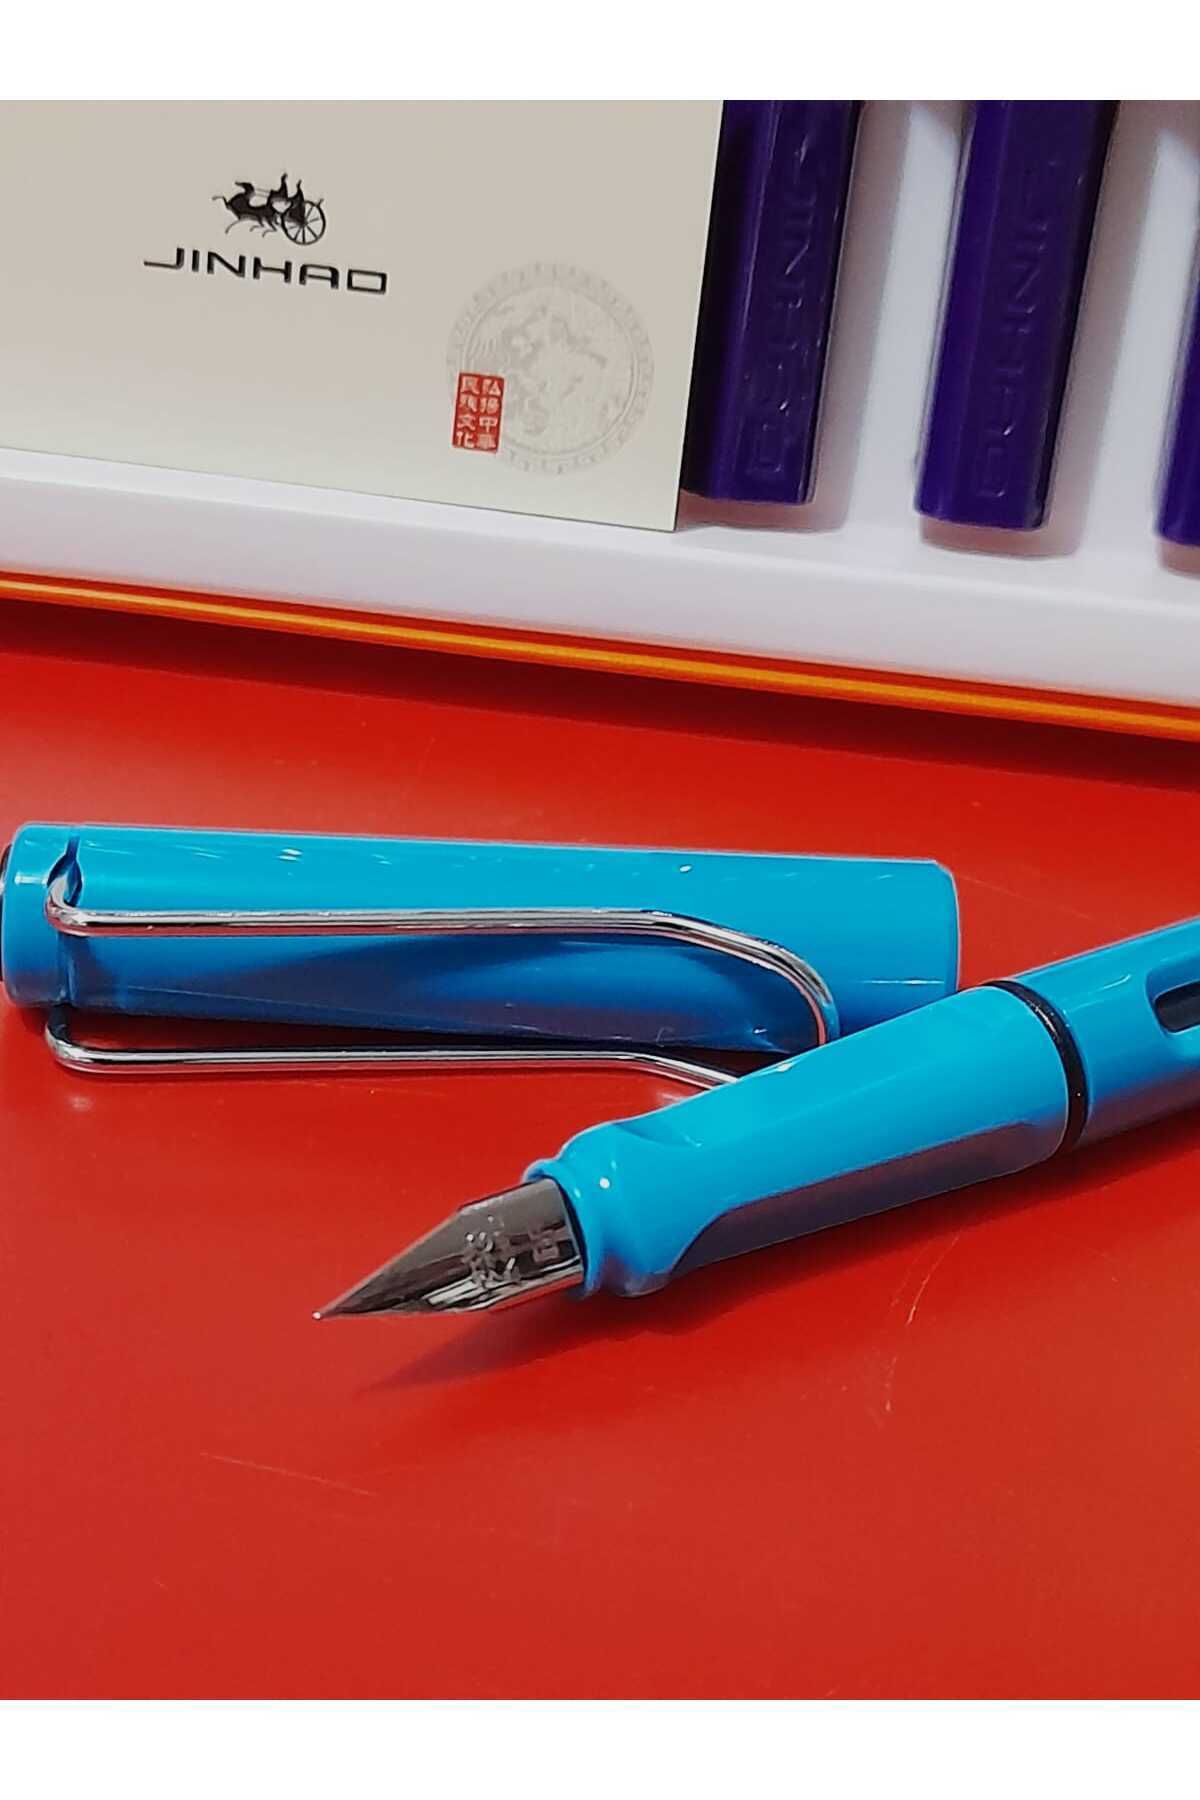 jinhao dolma kalem sert mika gövde EF uç OPAK renkler OPAK MAVİ mürekkep+kartuşla kullanılır